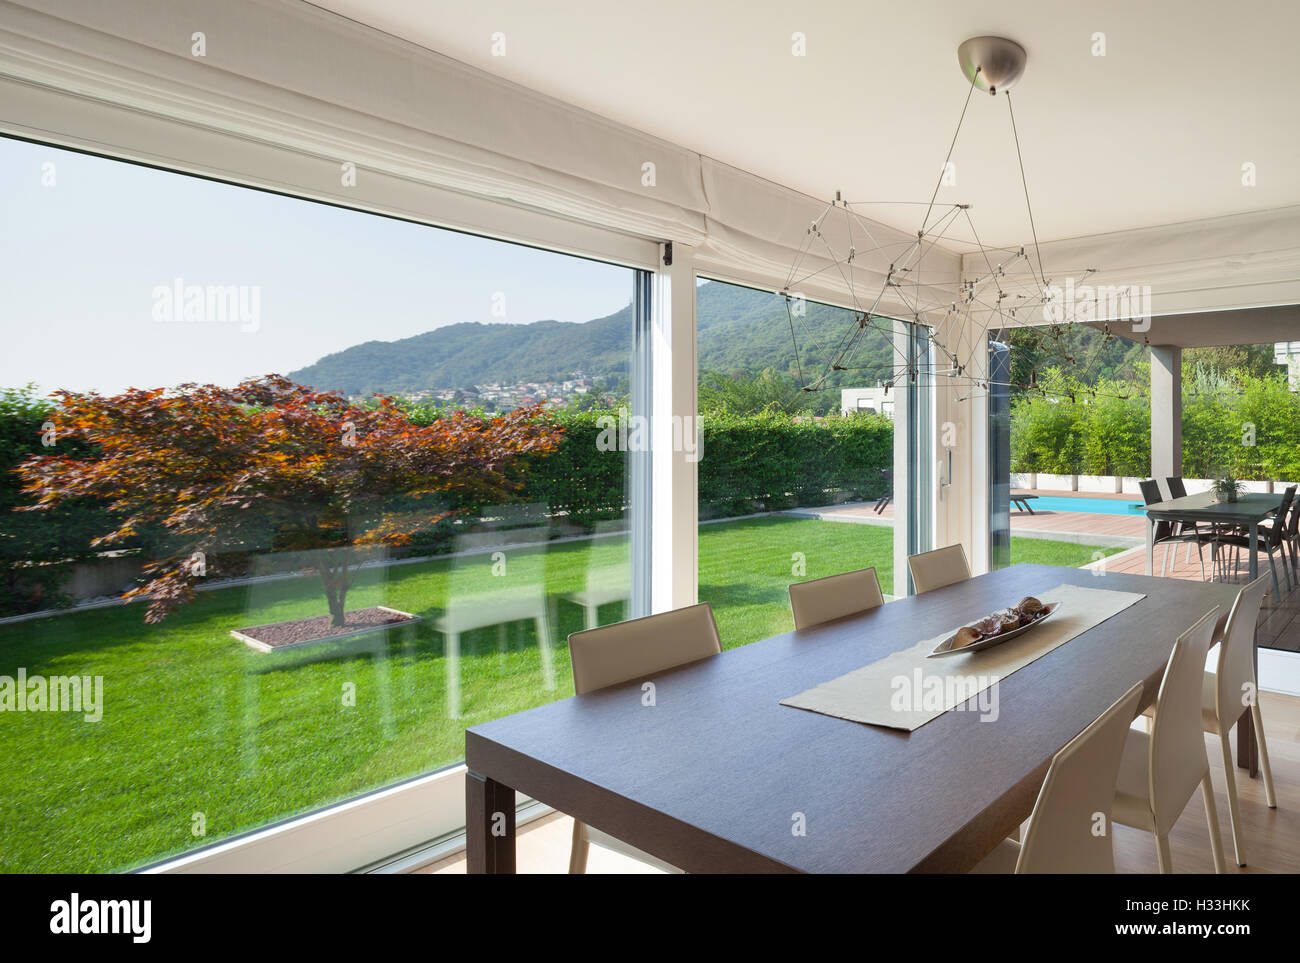 Vaste espace ouvert de maison de luxe, terrasse et jardin vue depuis les fenêtres Banque D'Images